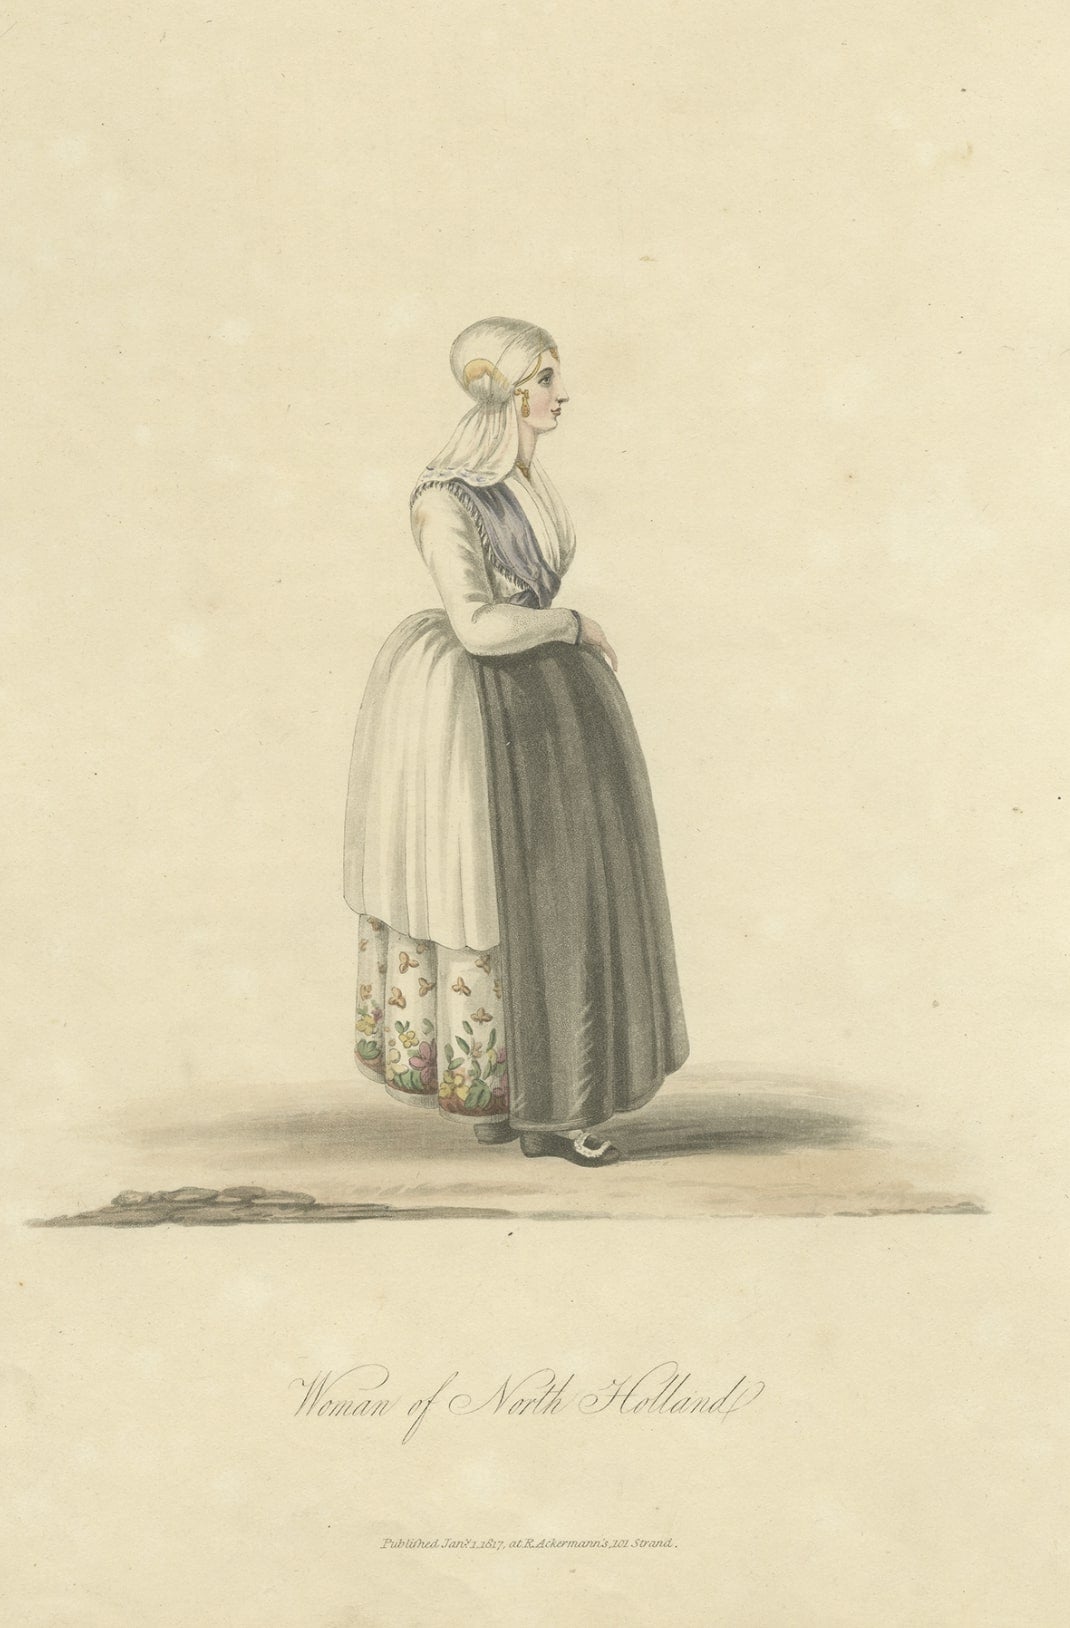 Antiker Kostümdruck mit dem Titel 'Frau aus Nordholland'. Alter Kostümdruck, der eine Frau aus der niederländischen Provinz 